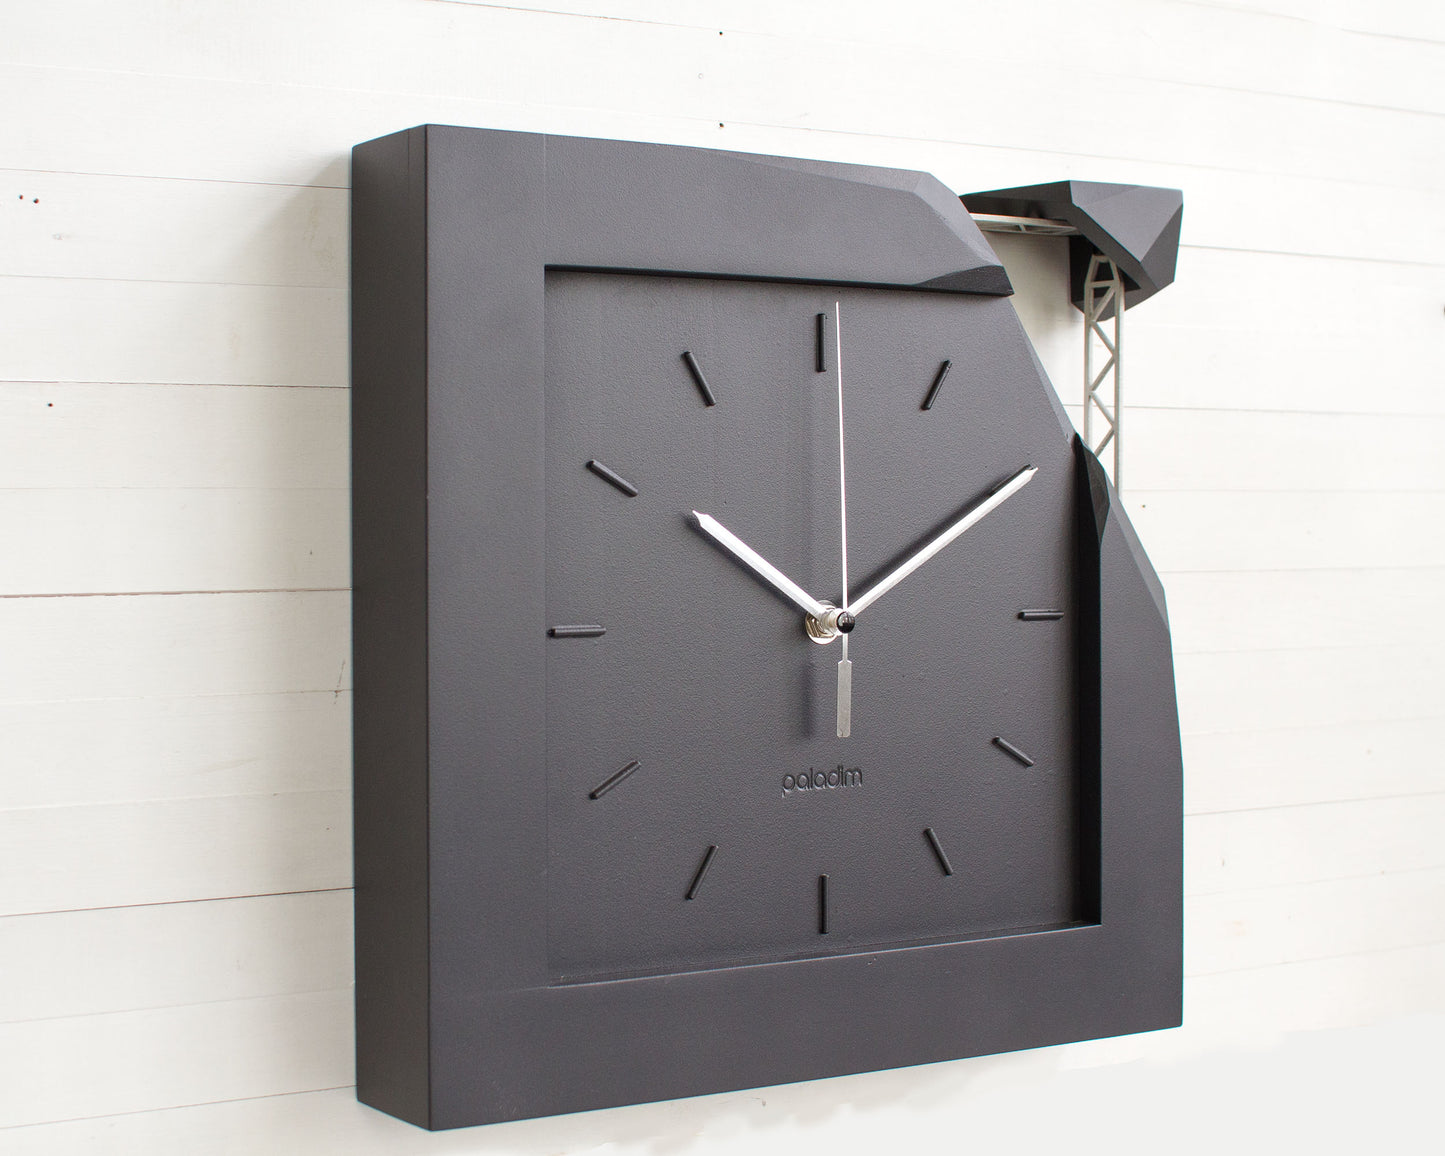 PRAF monochrome wall clock